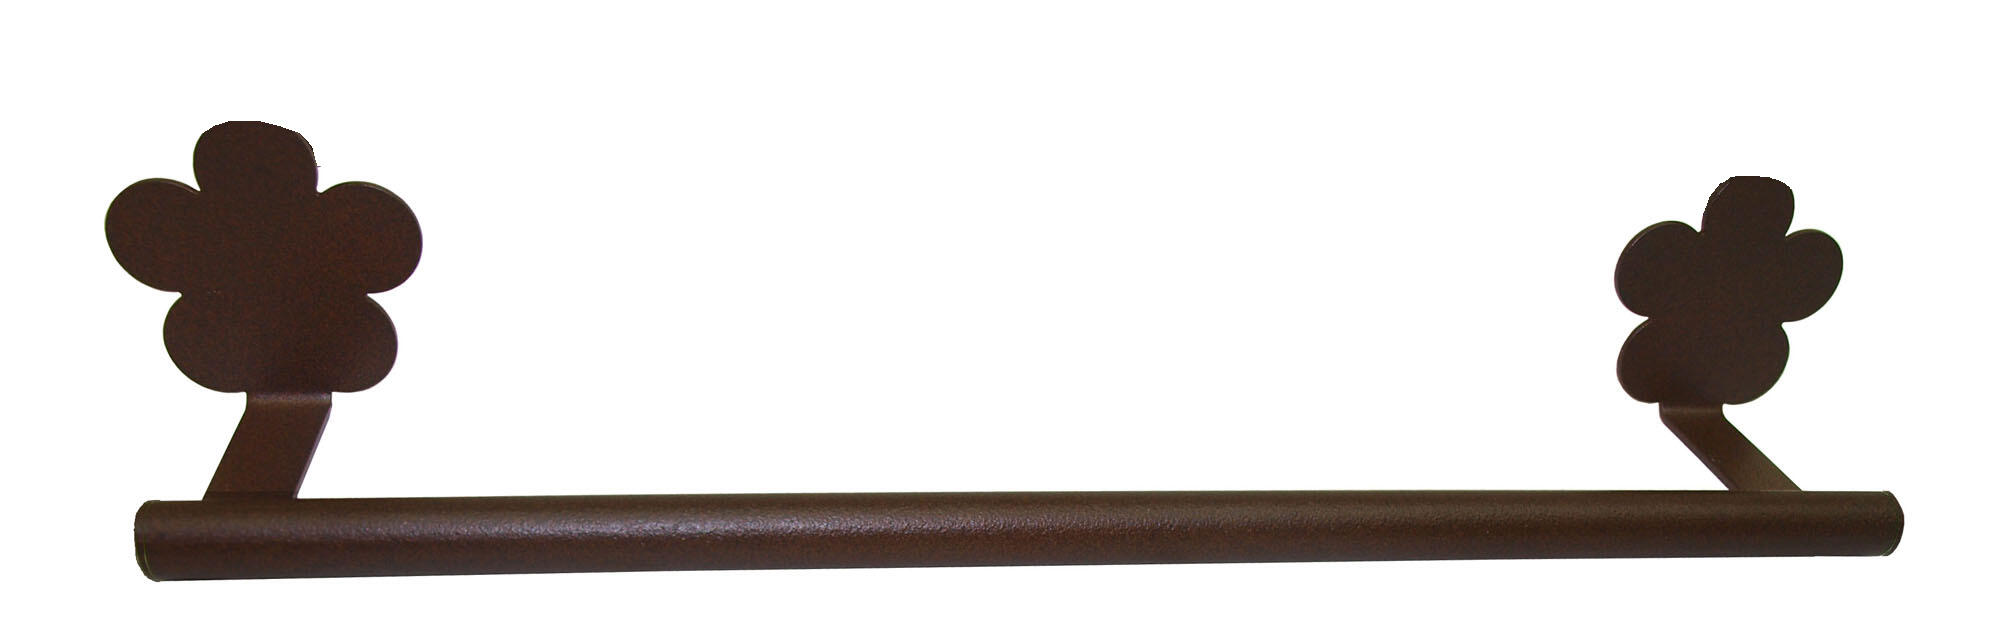 Toallero provenza bronce 40x6 cm